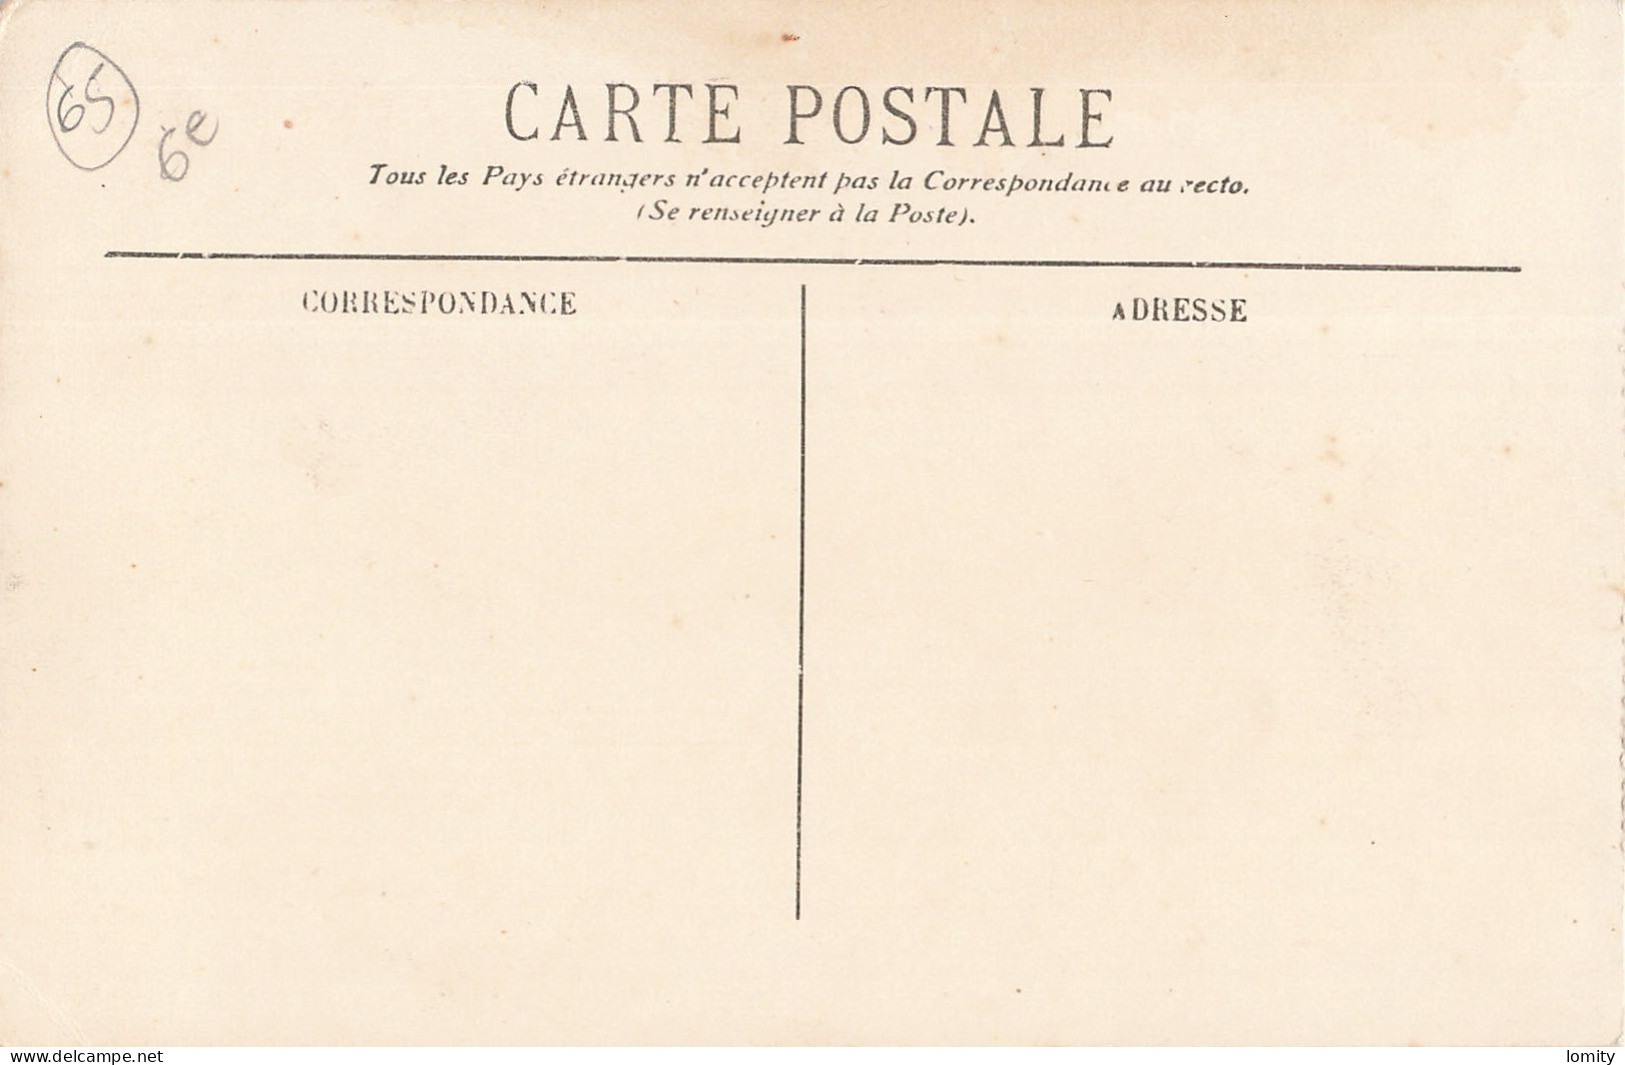 Destockage lot de 40 cartes postales CPA Hautes Pyrénées Gavarnie Cauterets Lourdes